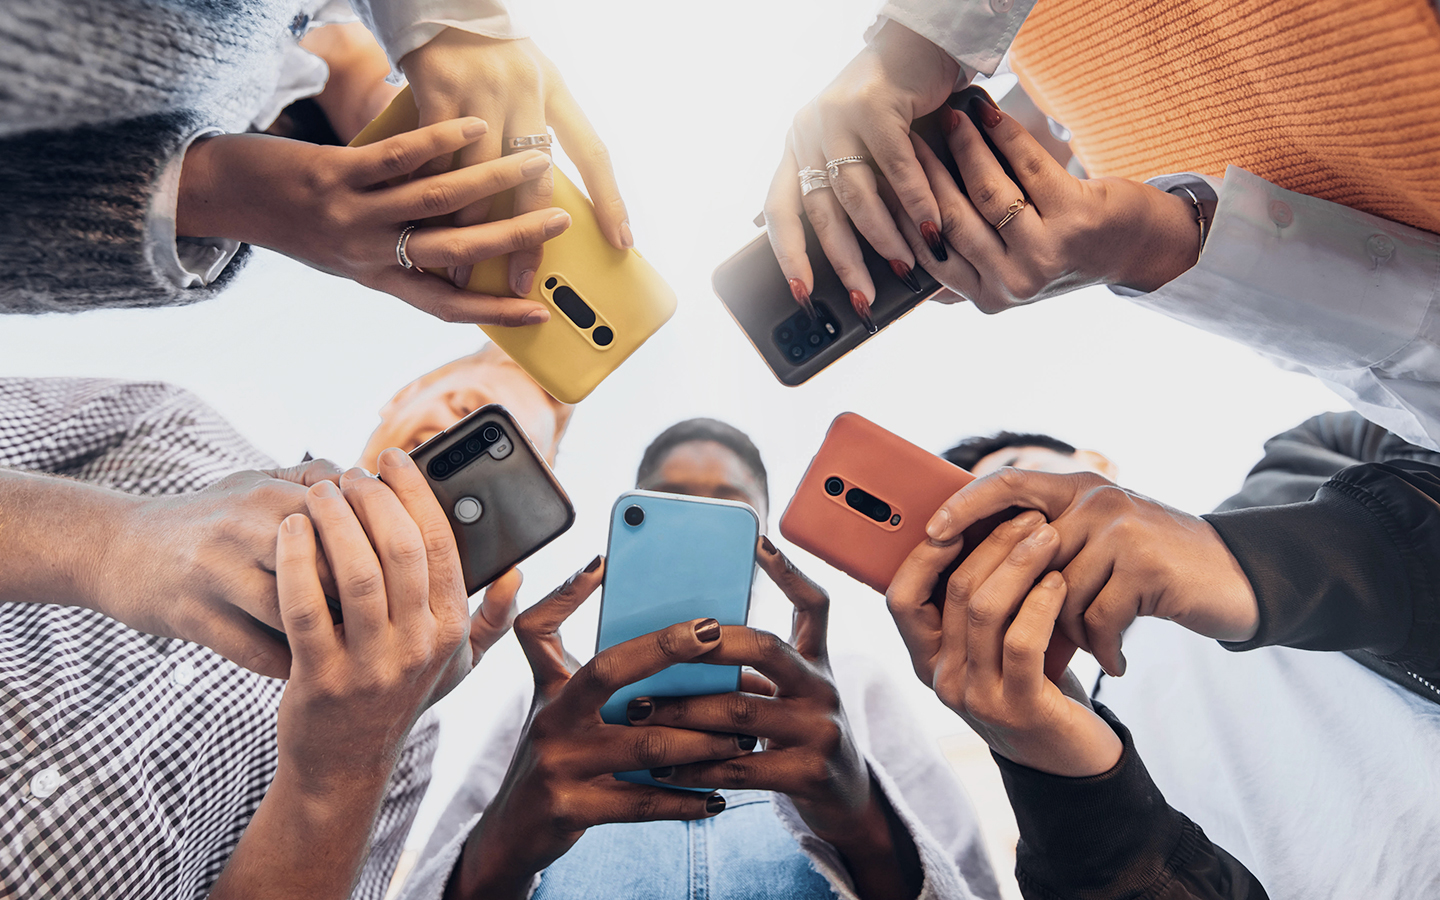 Foto: Jugendliche stehen in einer Runde und haben ein Smartphone in der Hand.